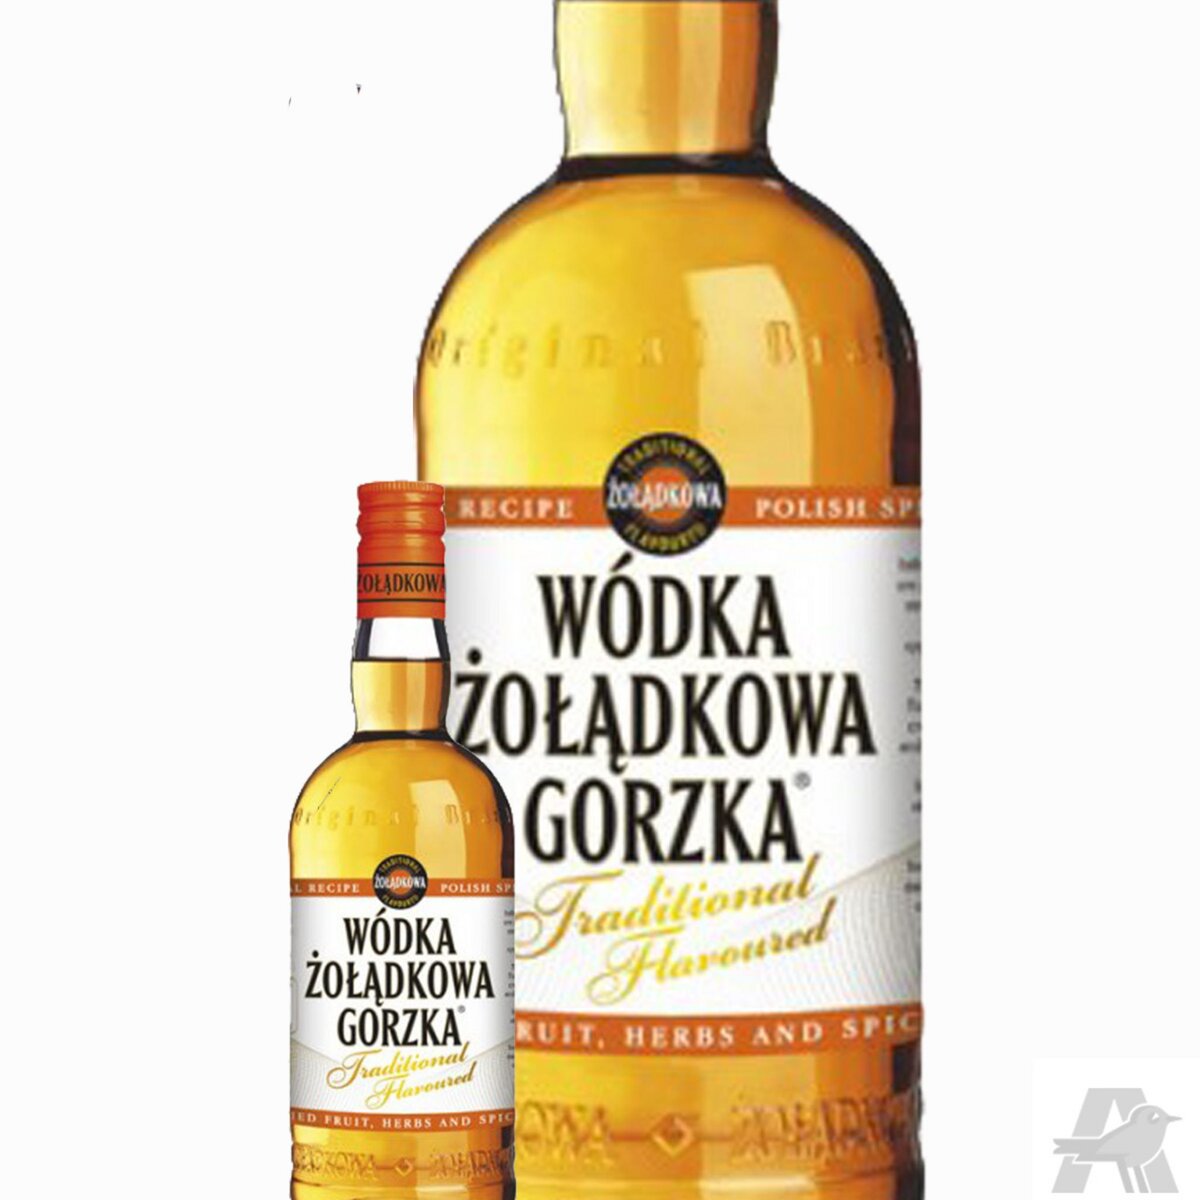 Vodka Zoladkowa Gorzka Traditionnel flavored - 50cl